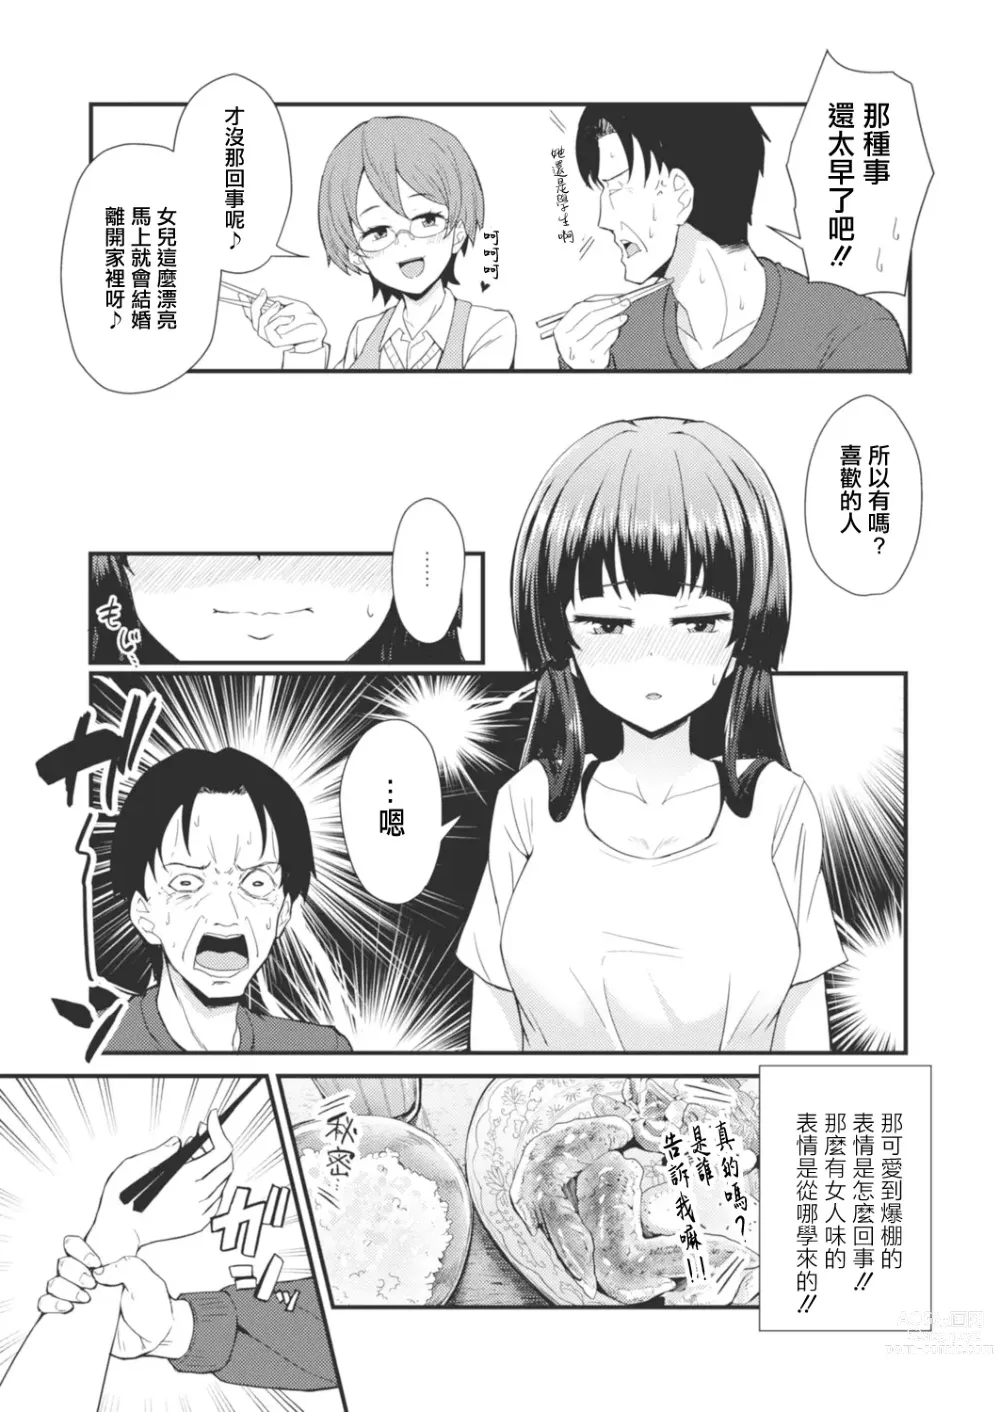 Page 3 of manga Gendai Shikiyoku Yotogibanashi Daiichiya Kaguya no Shokuzai